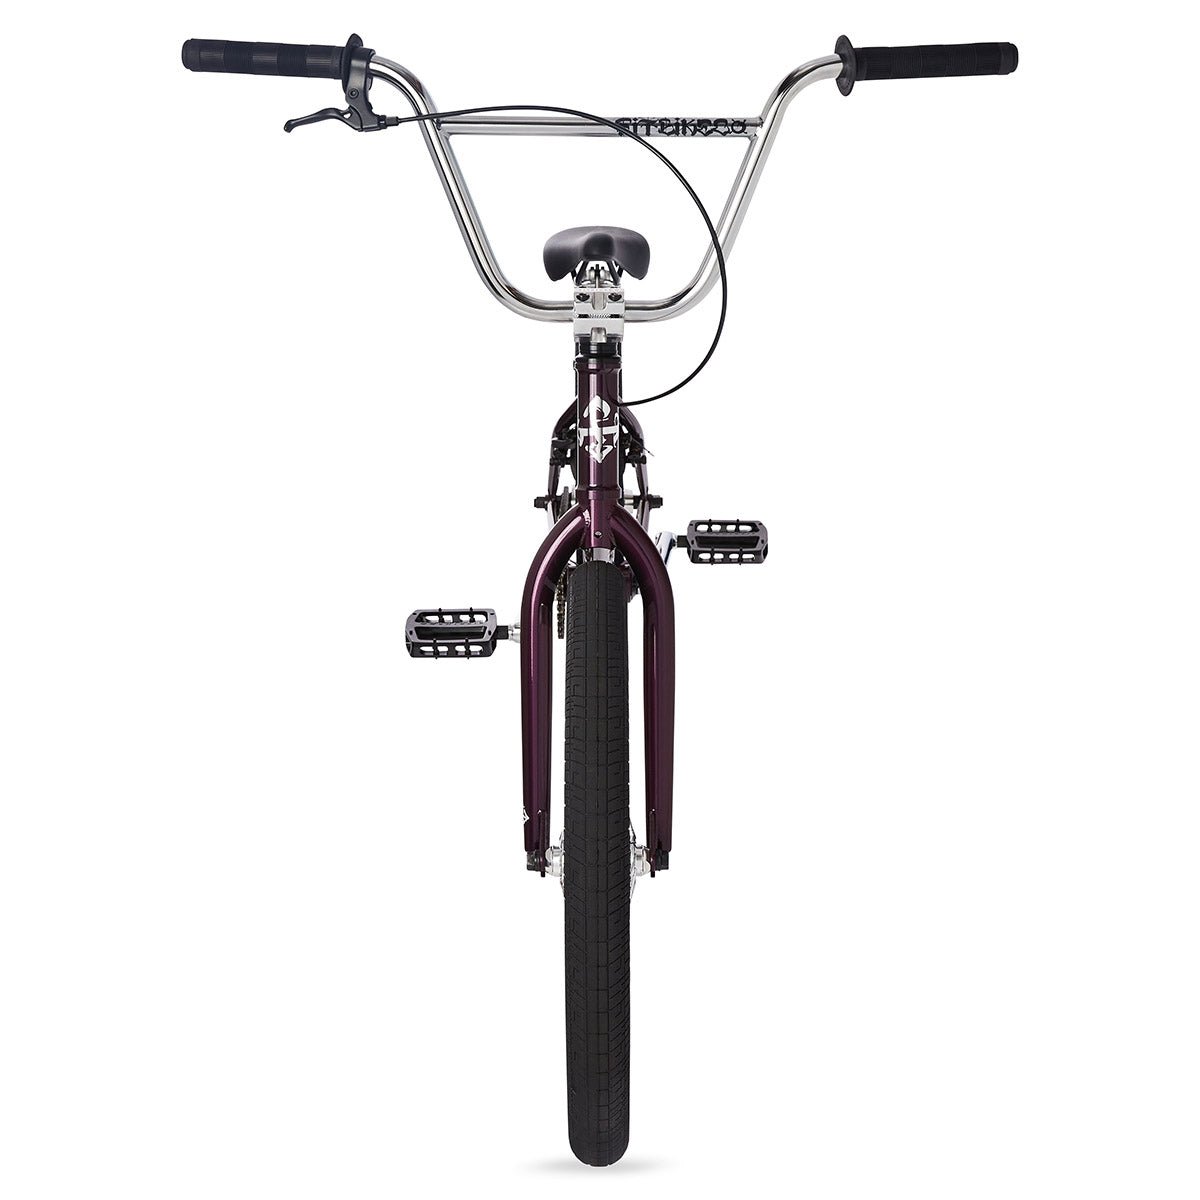 2023 Fit Series 22 Deep Purple BMX Bicycle - Alaska Bicycle Center